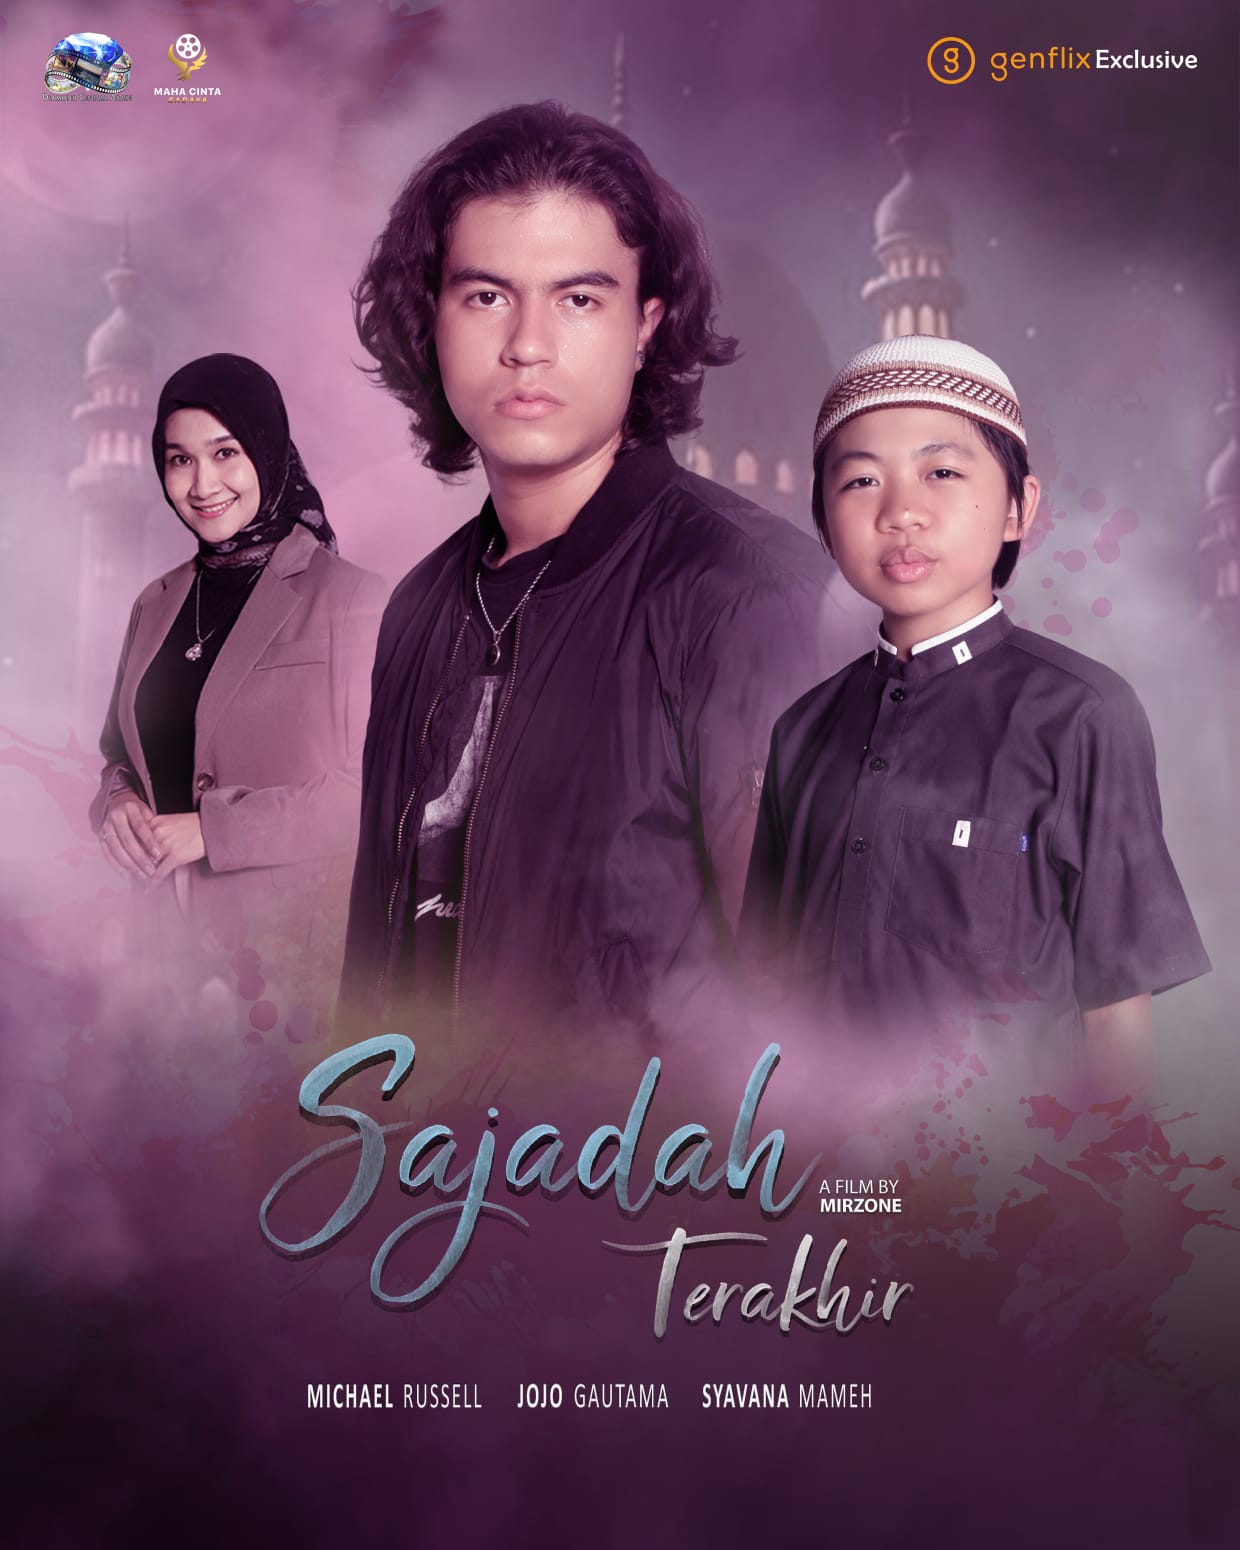 Jojo Gautama, Penyanyi Gatot Kaca, tokoh utama di Sajadah Terakhir  webseries Genflix Exclusive terbaru